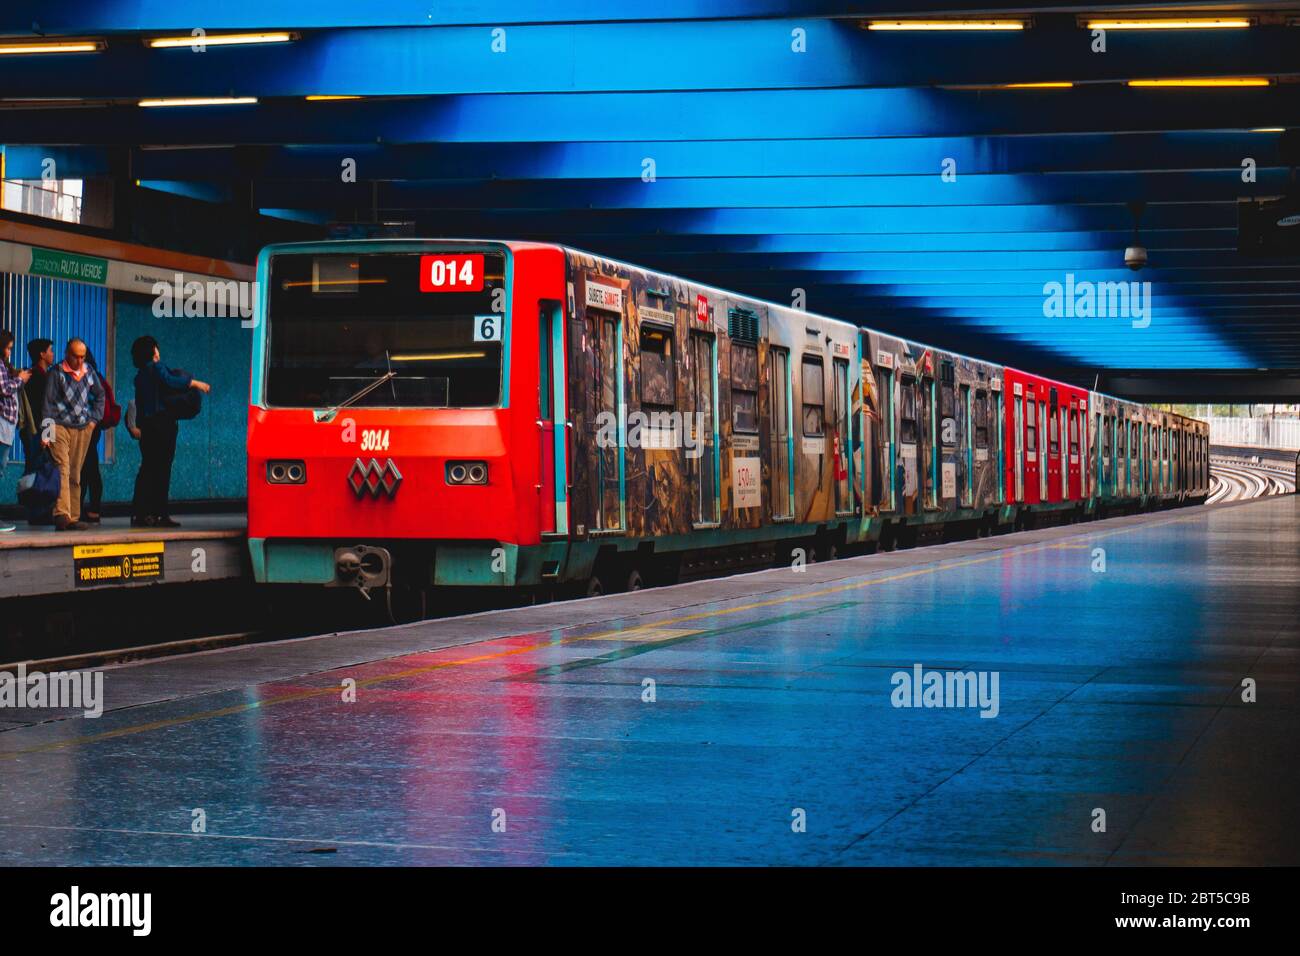 SANTIAGO, CILE - OTTOBRE 2015: Un treno della metropolitana di Santiago alla linea 2 Foto Stock